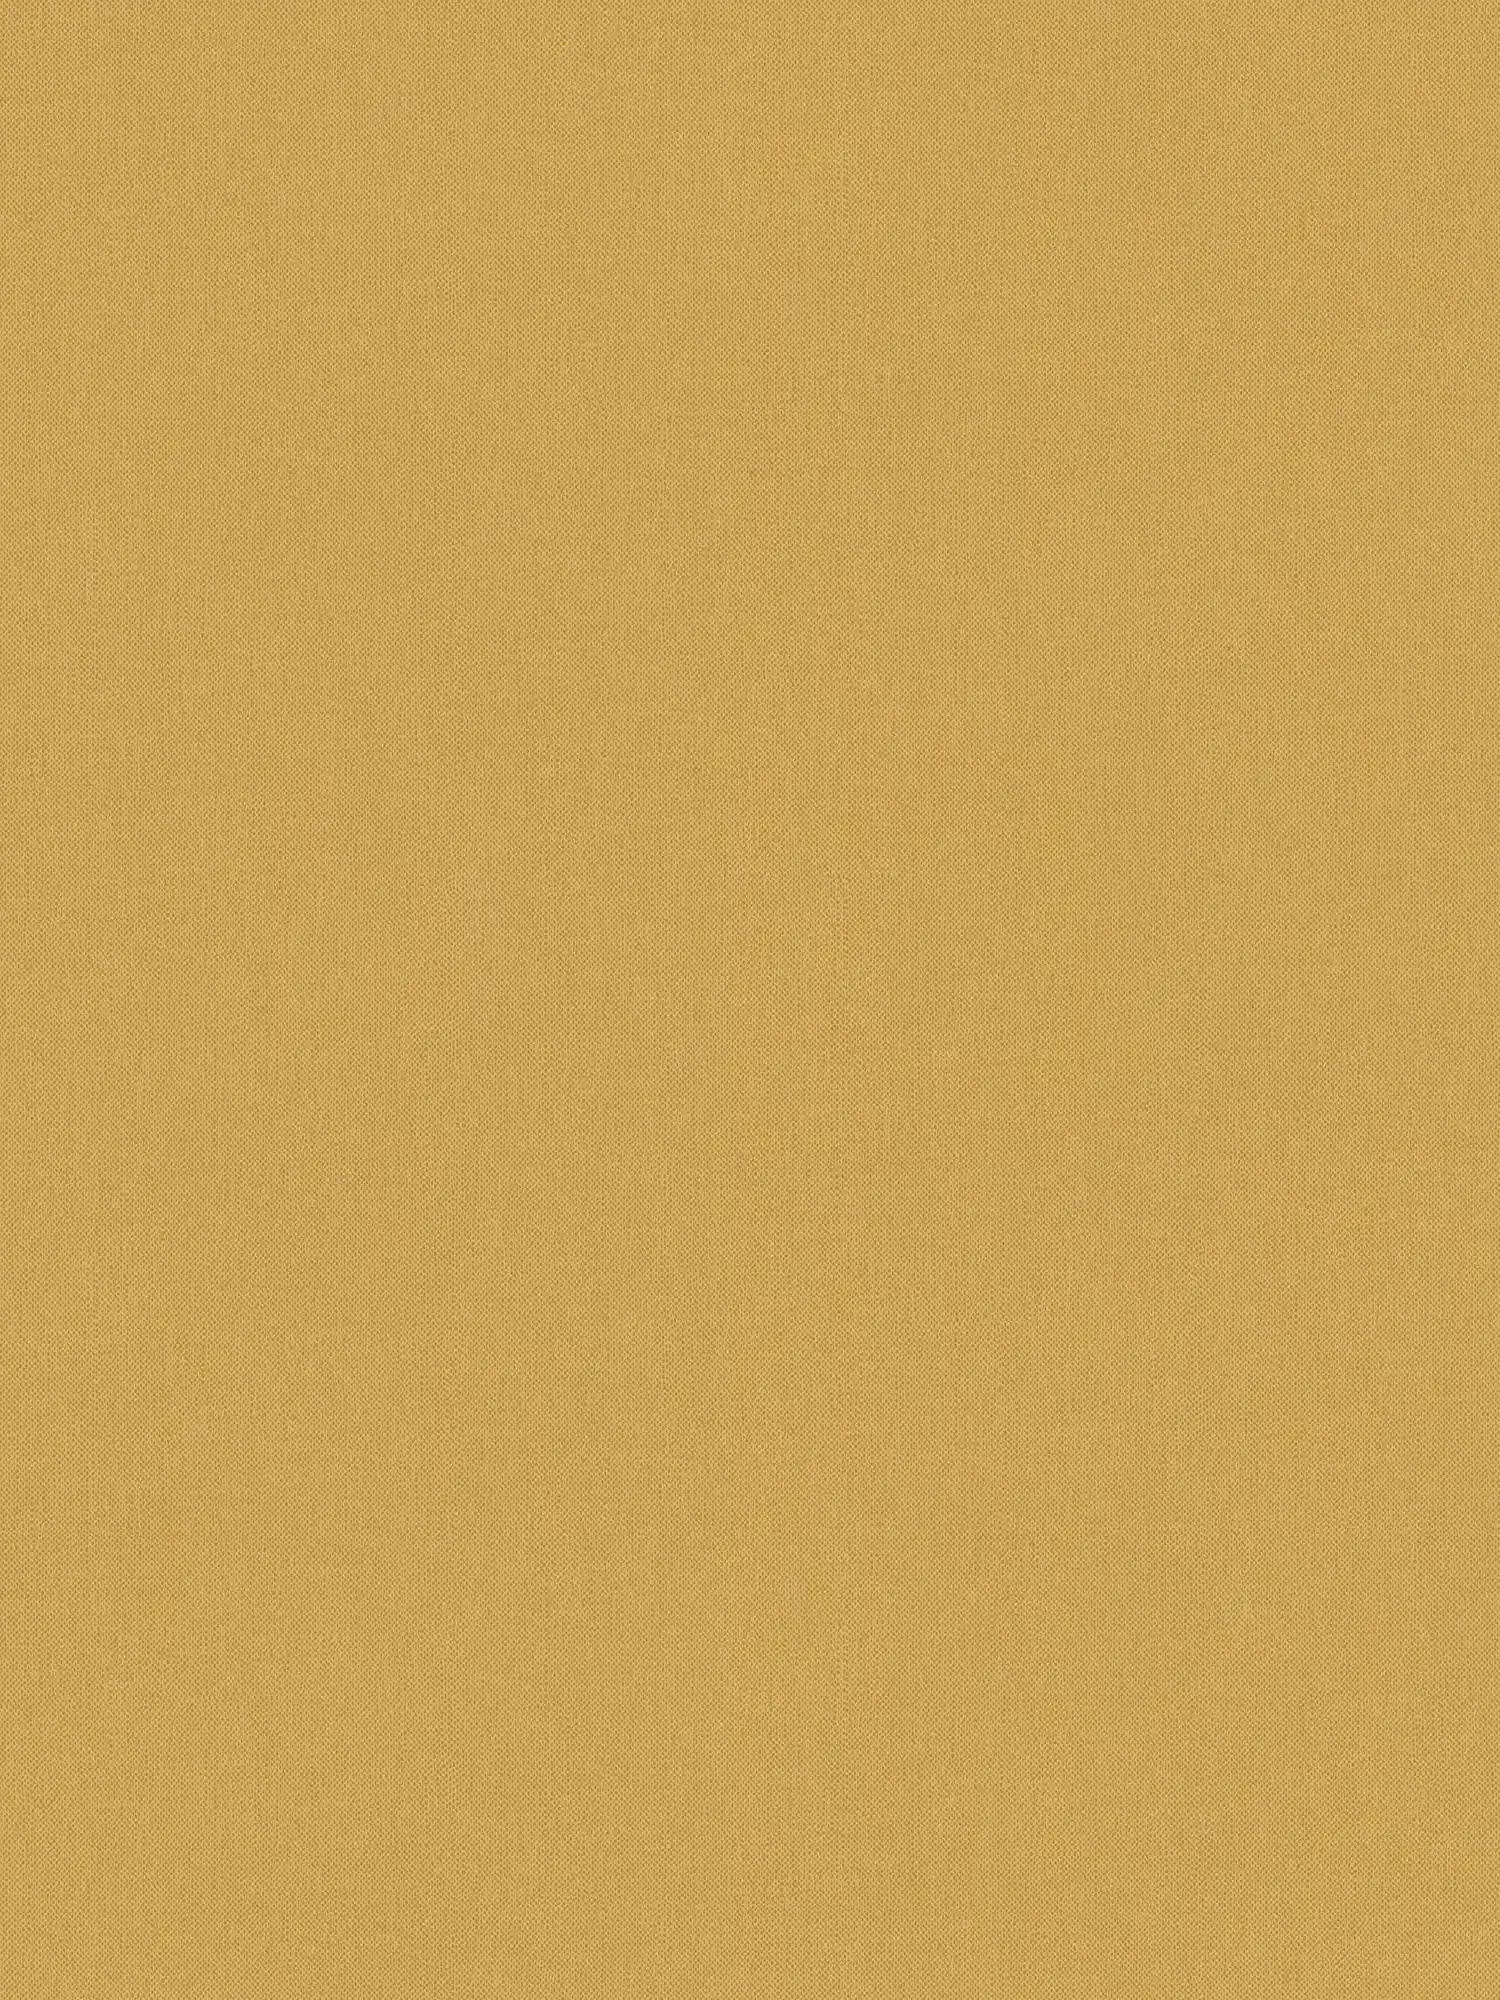 Linen optics wallpaper mustard yellow plain & matte textile texture - yellow
